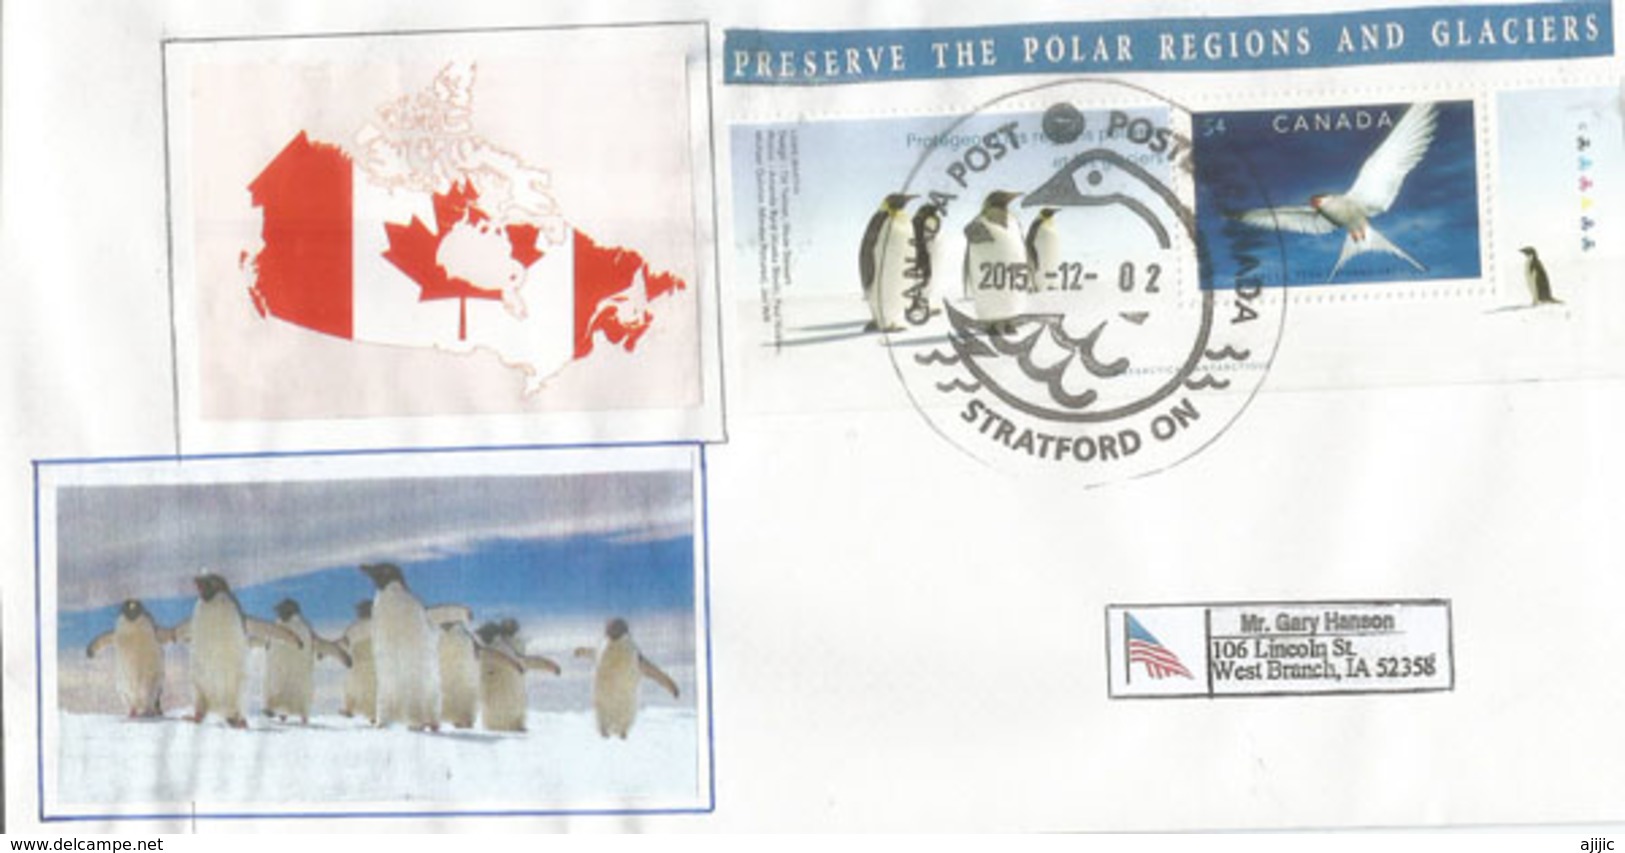 Preserve The Polar Regions And Glaciers, Letter From Ontario Canada, Sent To Iowa - Preservare Le Regioni Polari E Ghiacciai